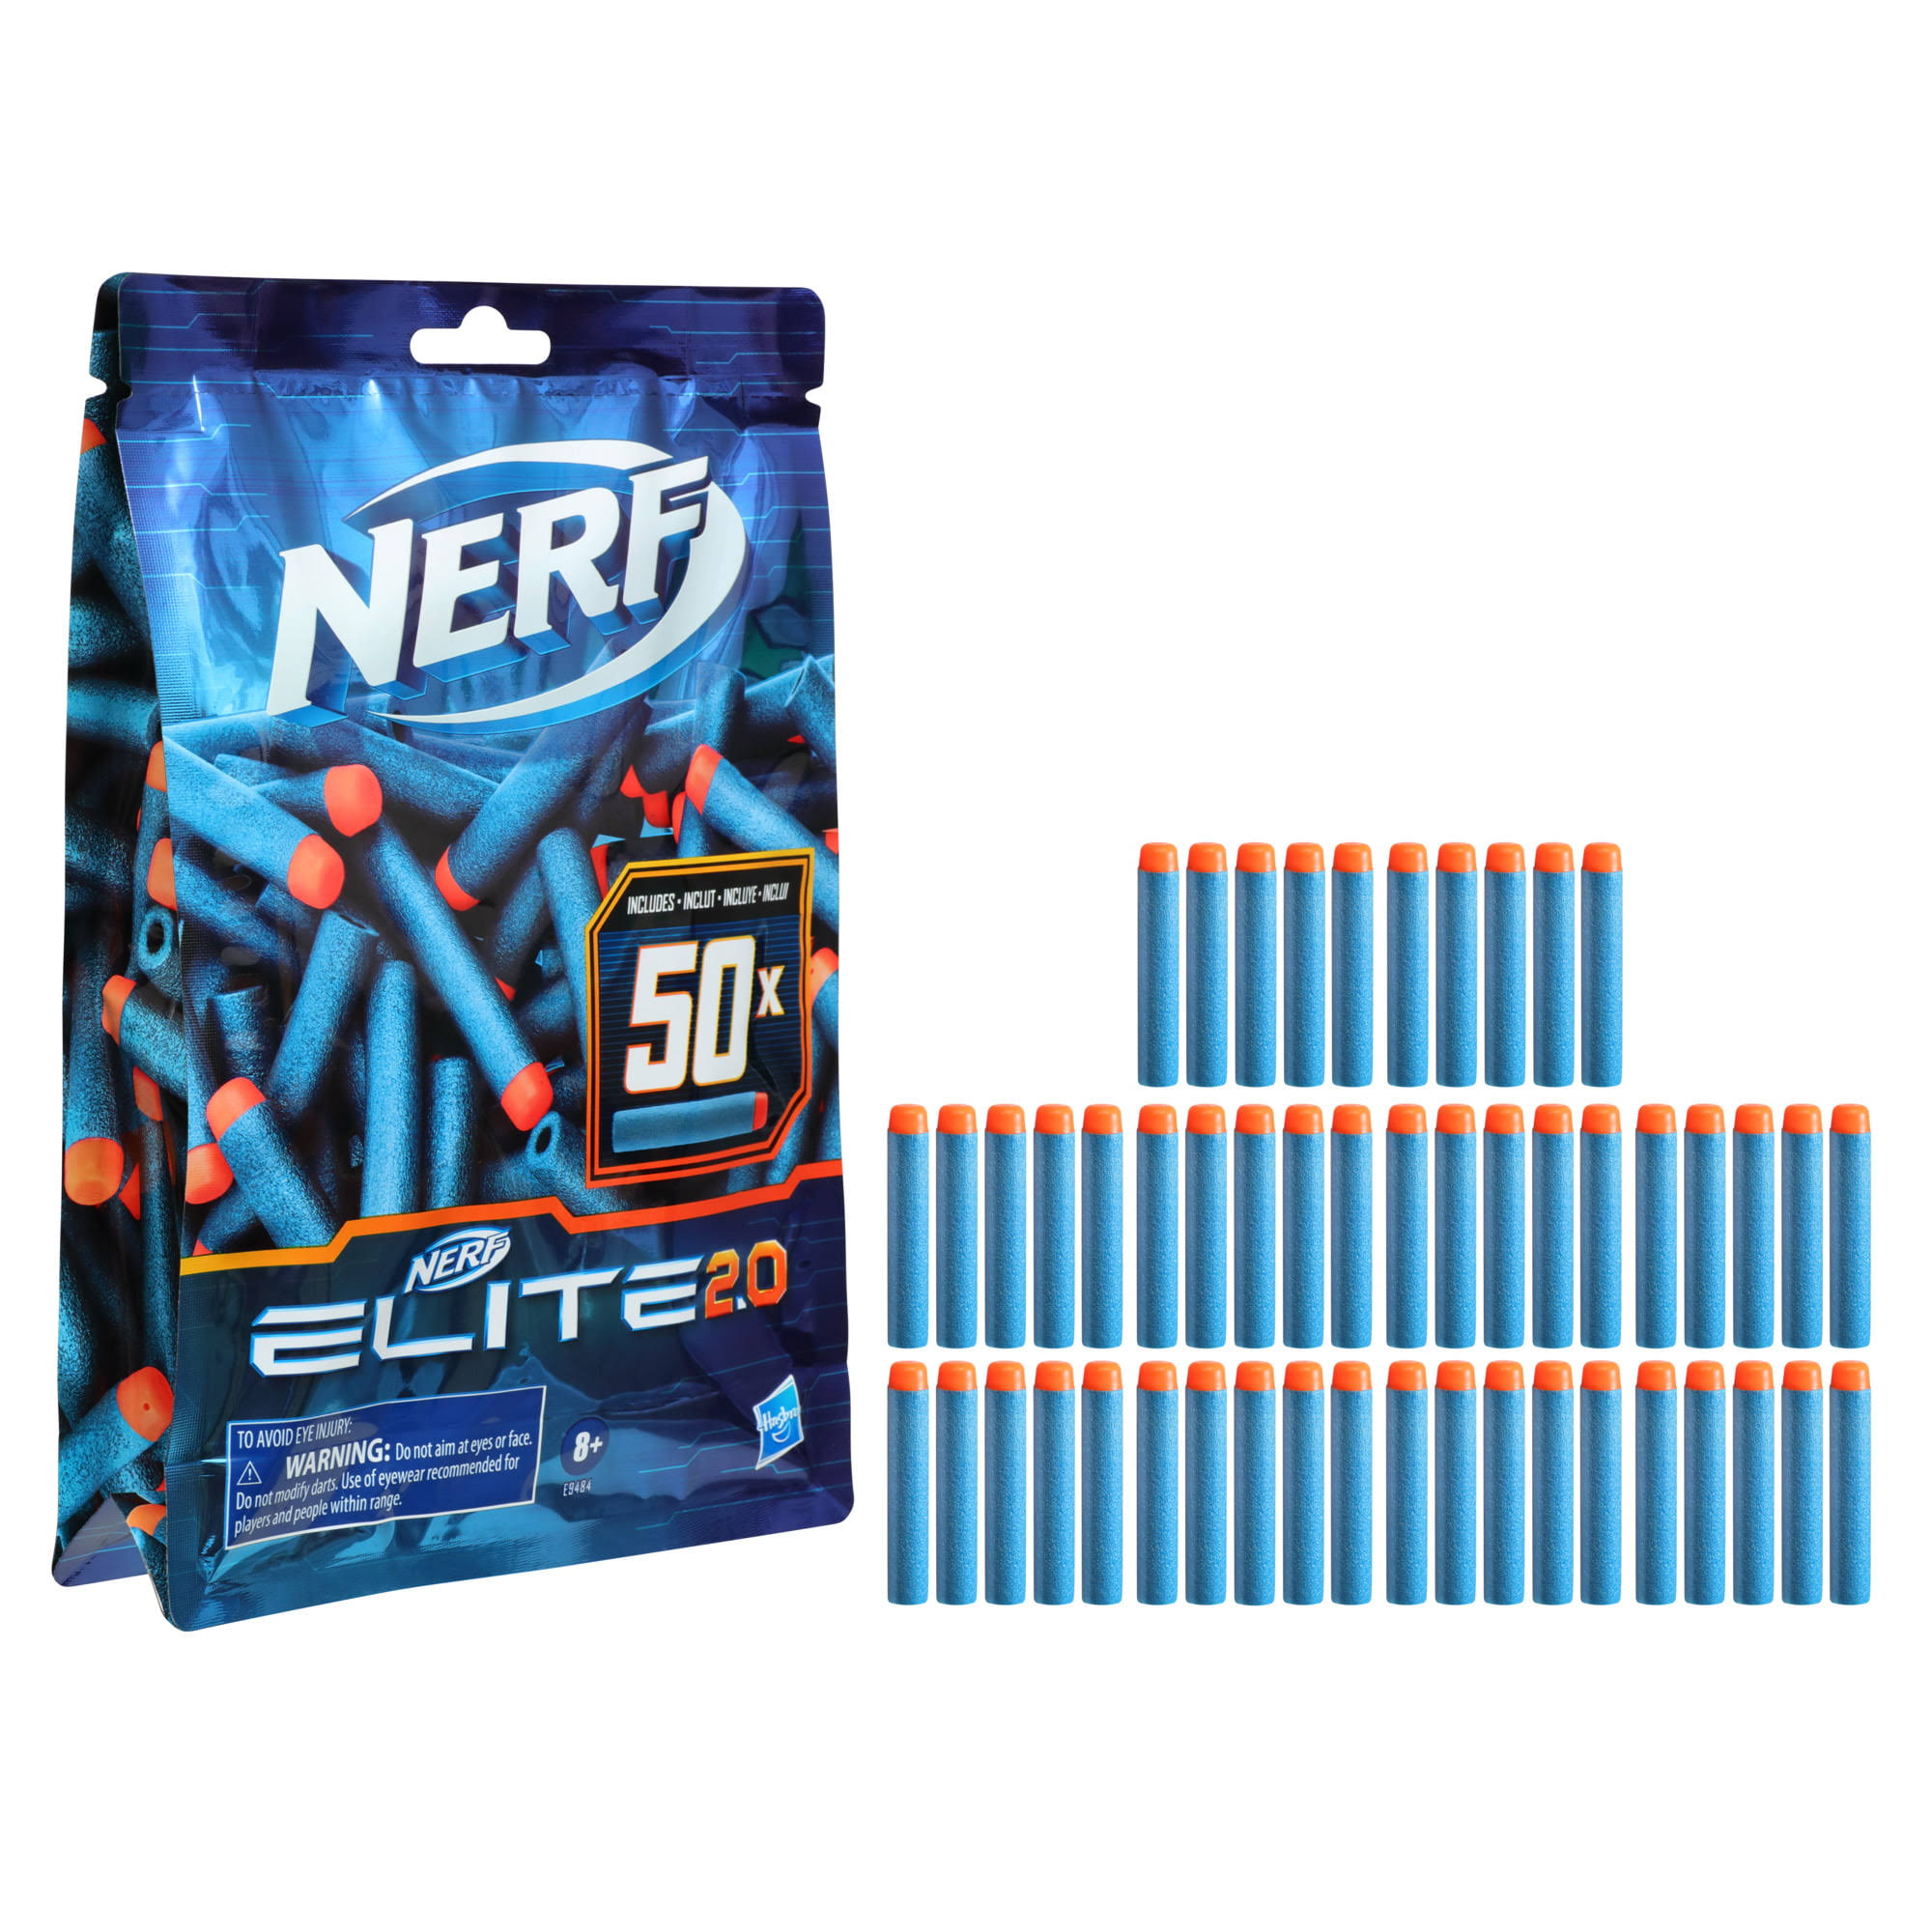 Nerf Elite 2.0 Blaster (Refill 50)